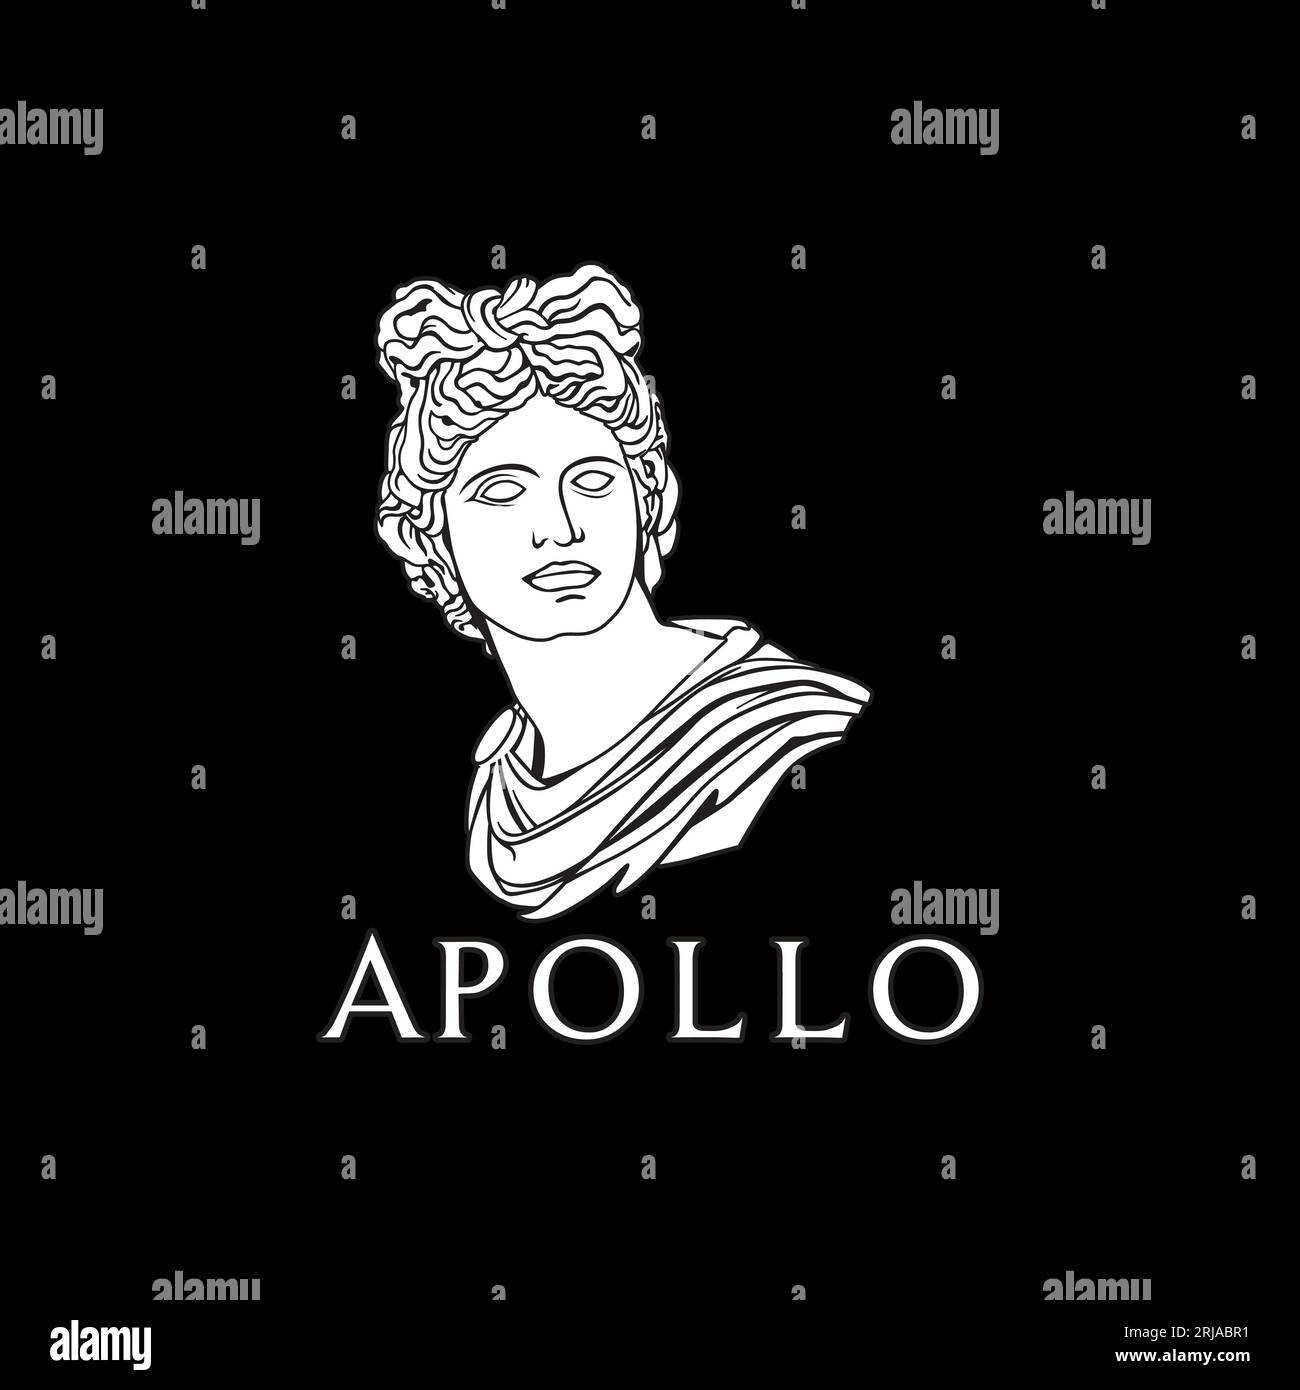 Apollo Griechisch-Römischer Gott Skulptur Design Inspiration Stock Vektor